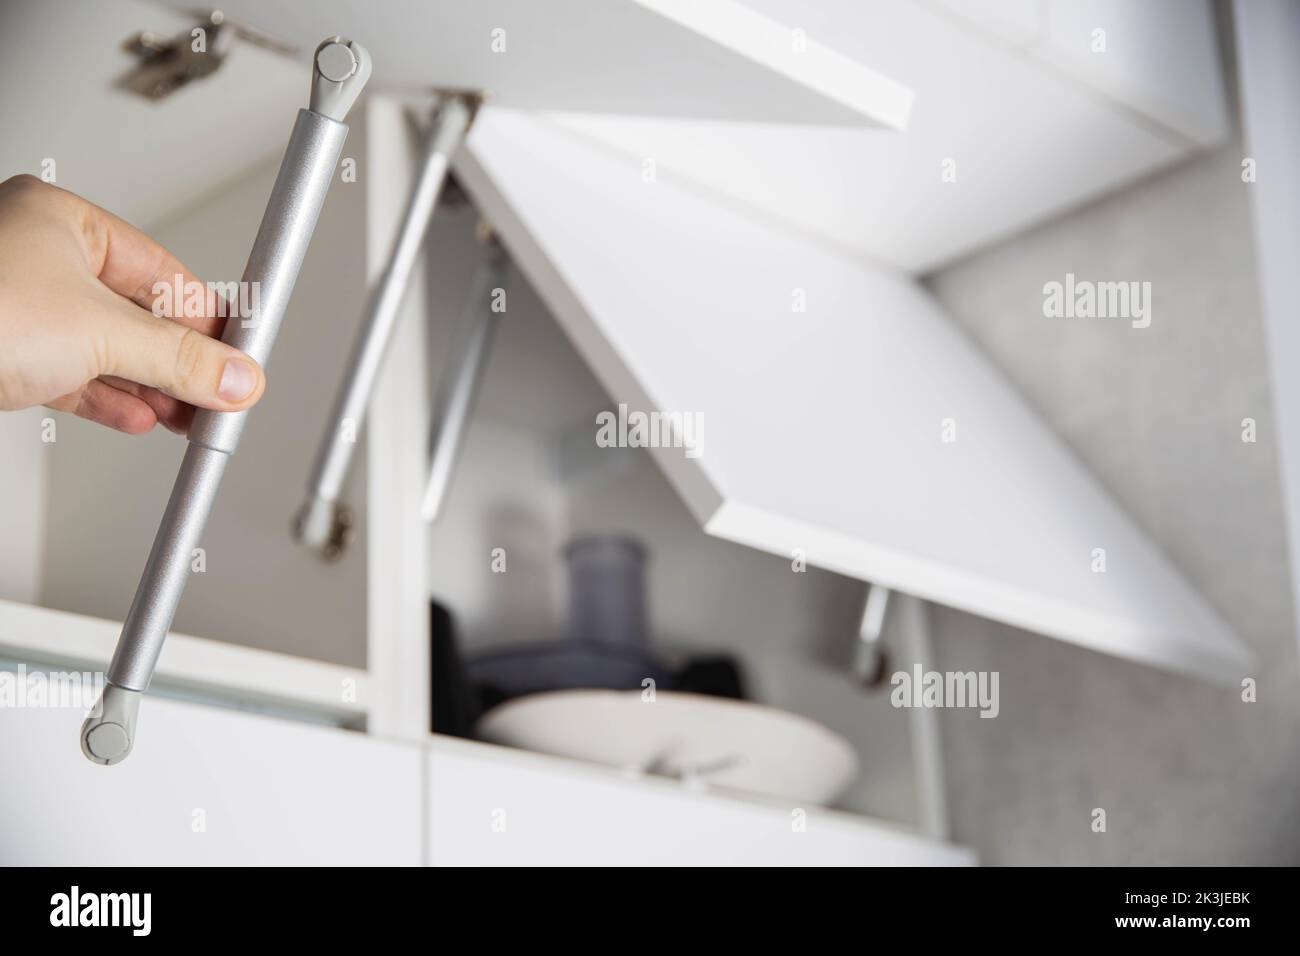 Ein Möbelmontagearbeiter hält eine einhole Gasfeder, um eine